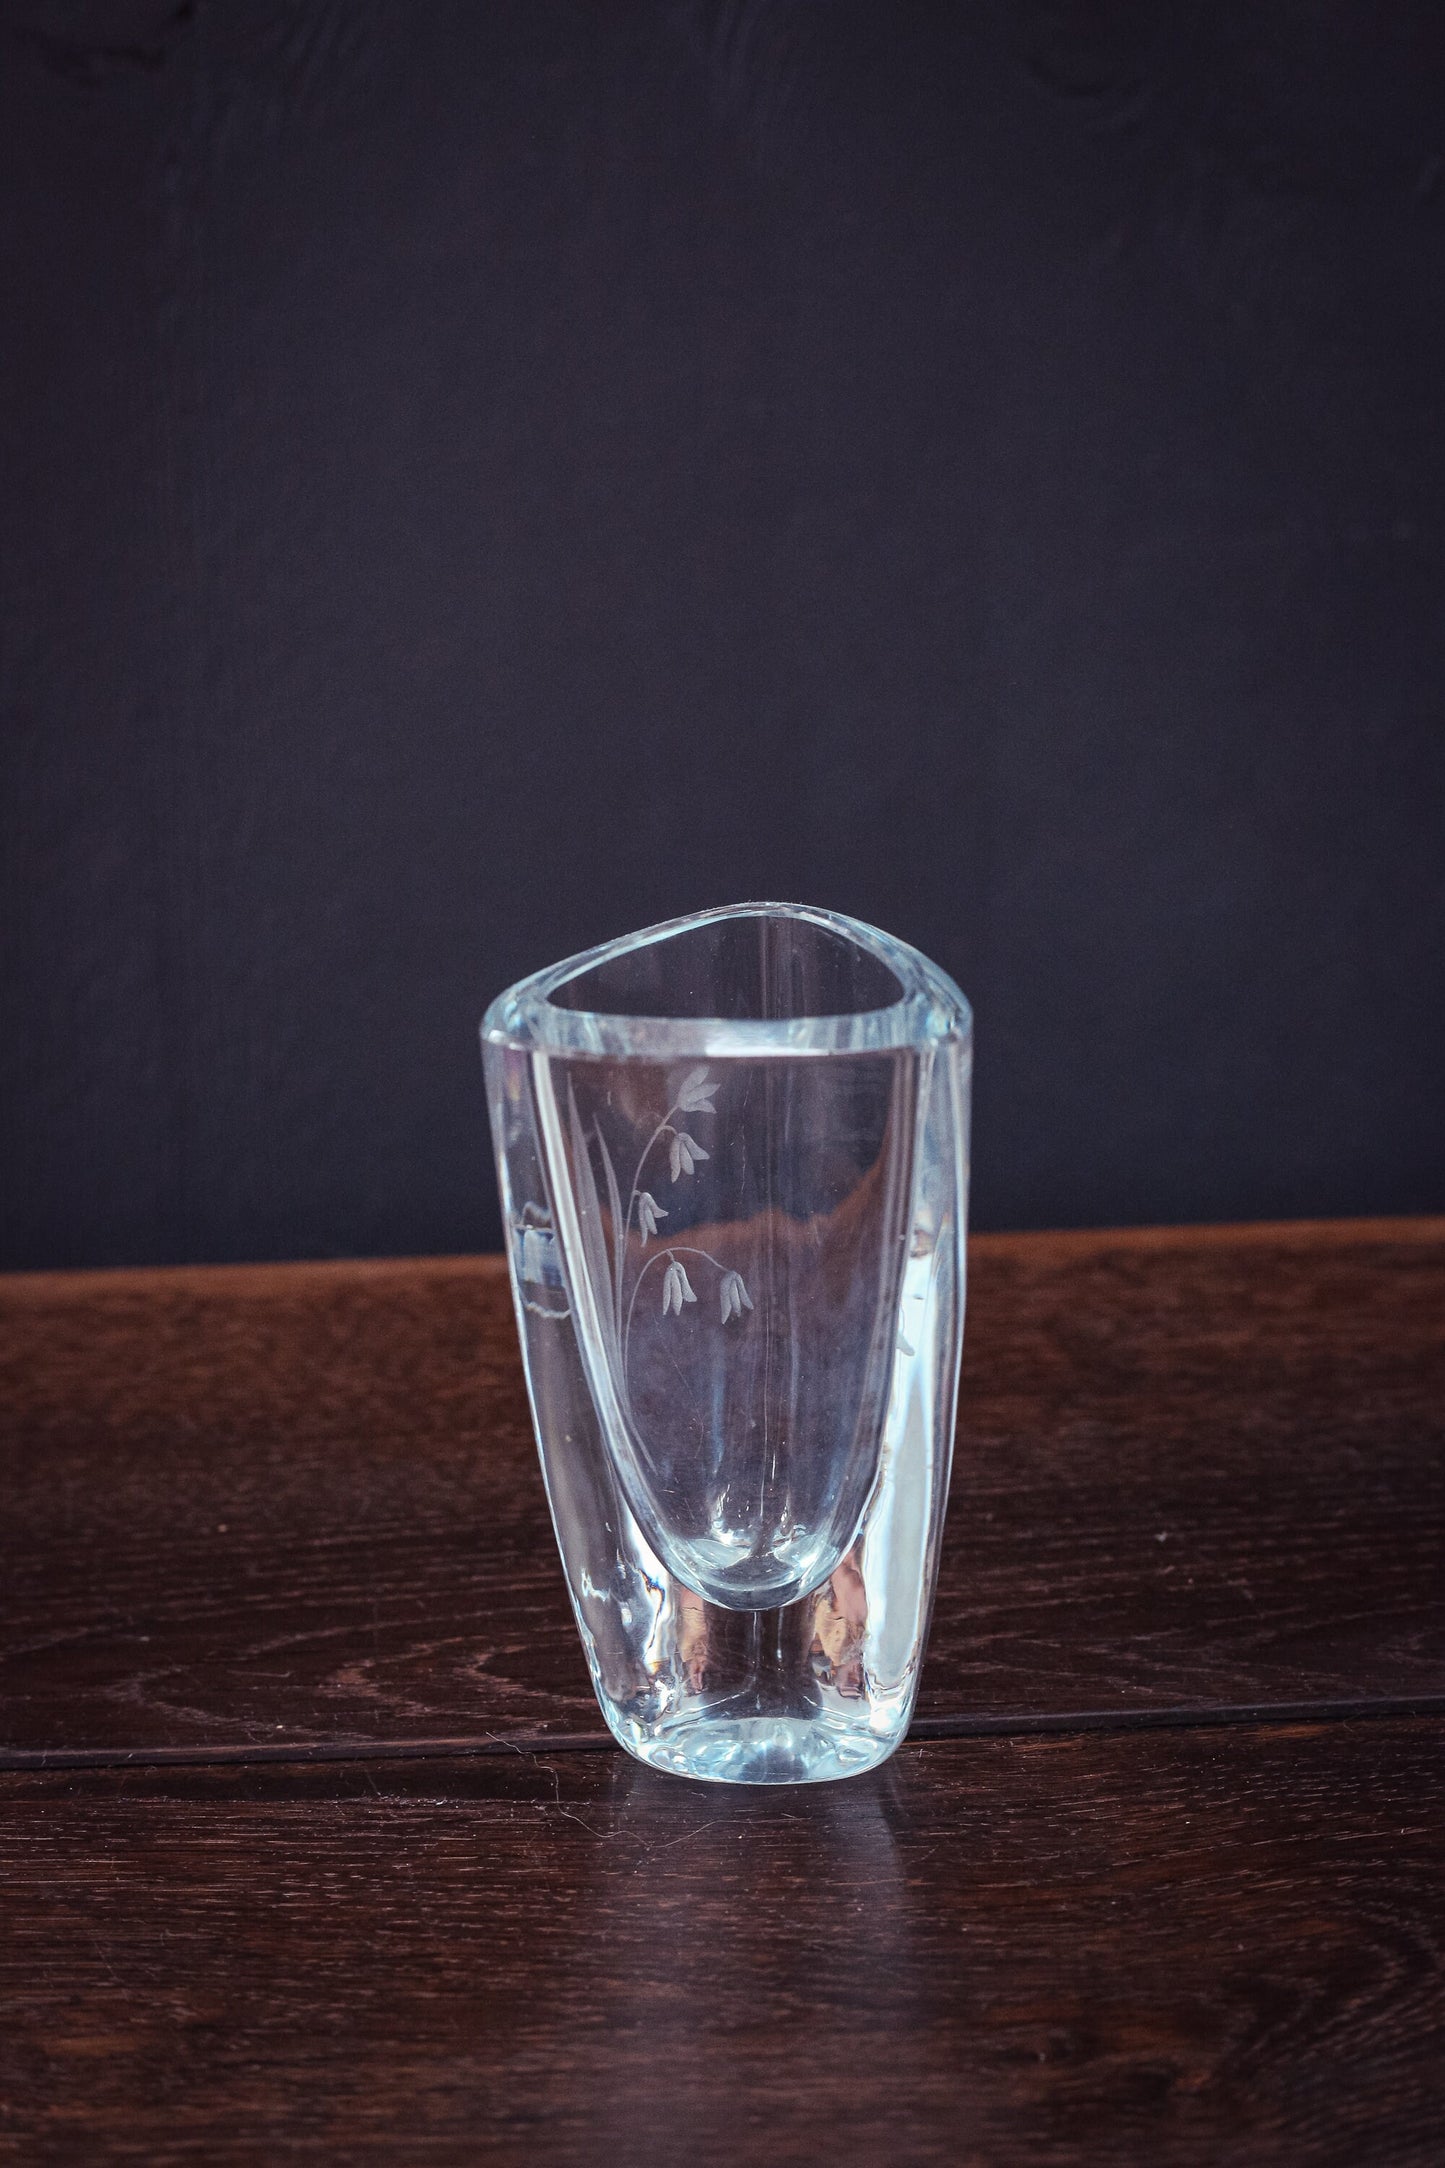 Lily of Valley Signed Strombergshyttan Vase - Vintage Swedish Etched Crystal Art Glass Vase